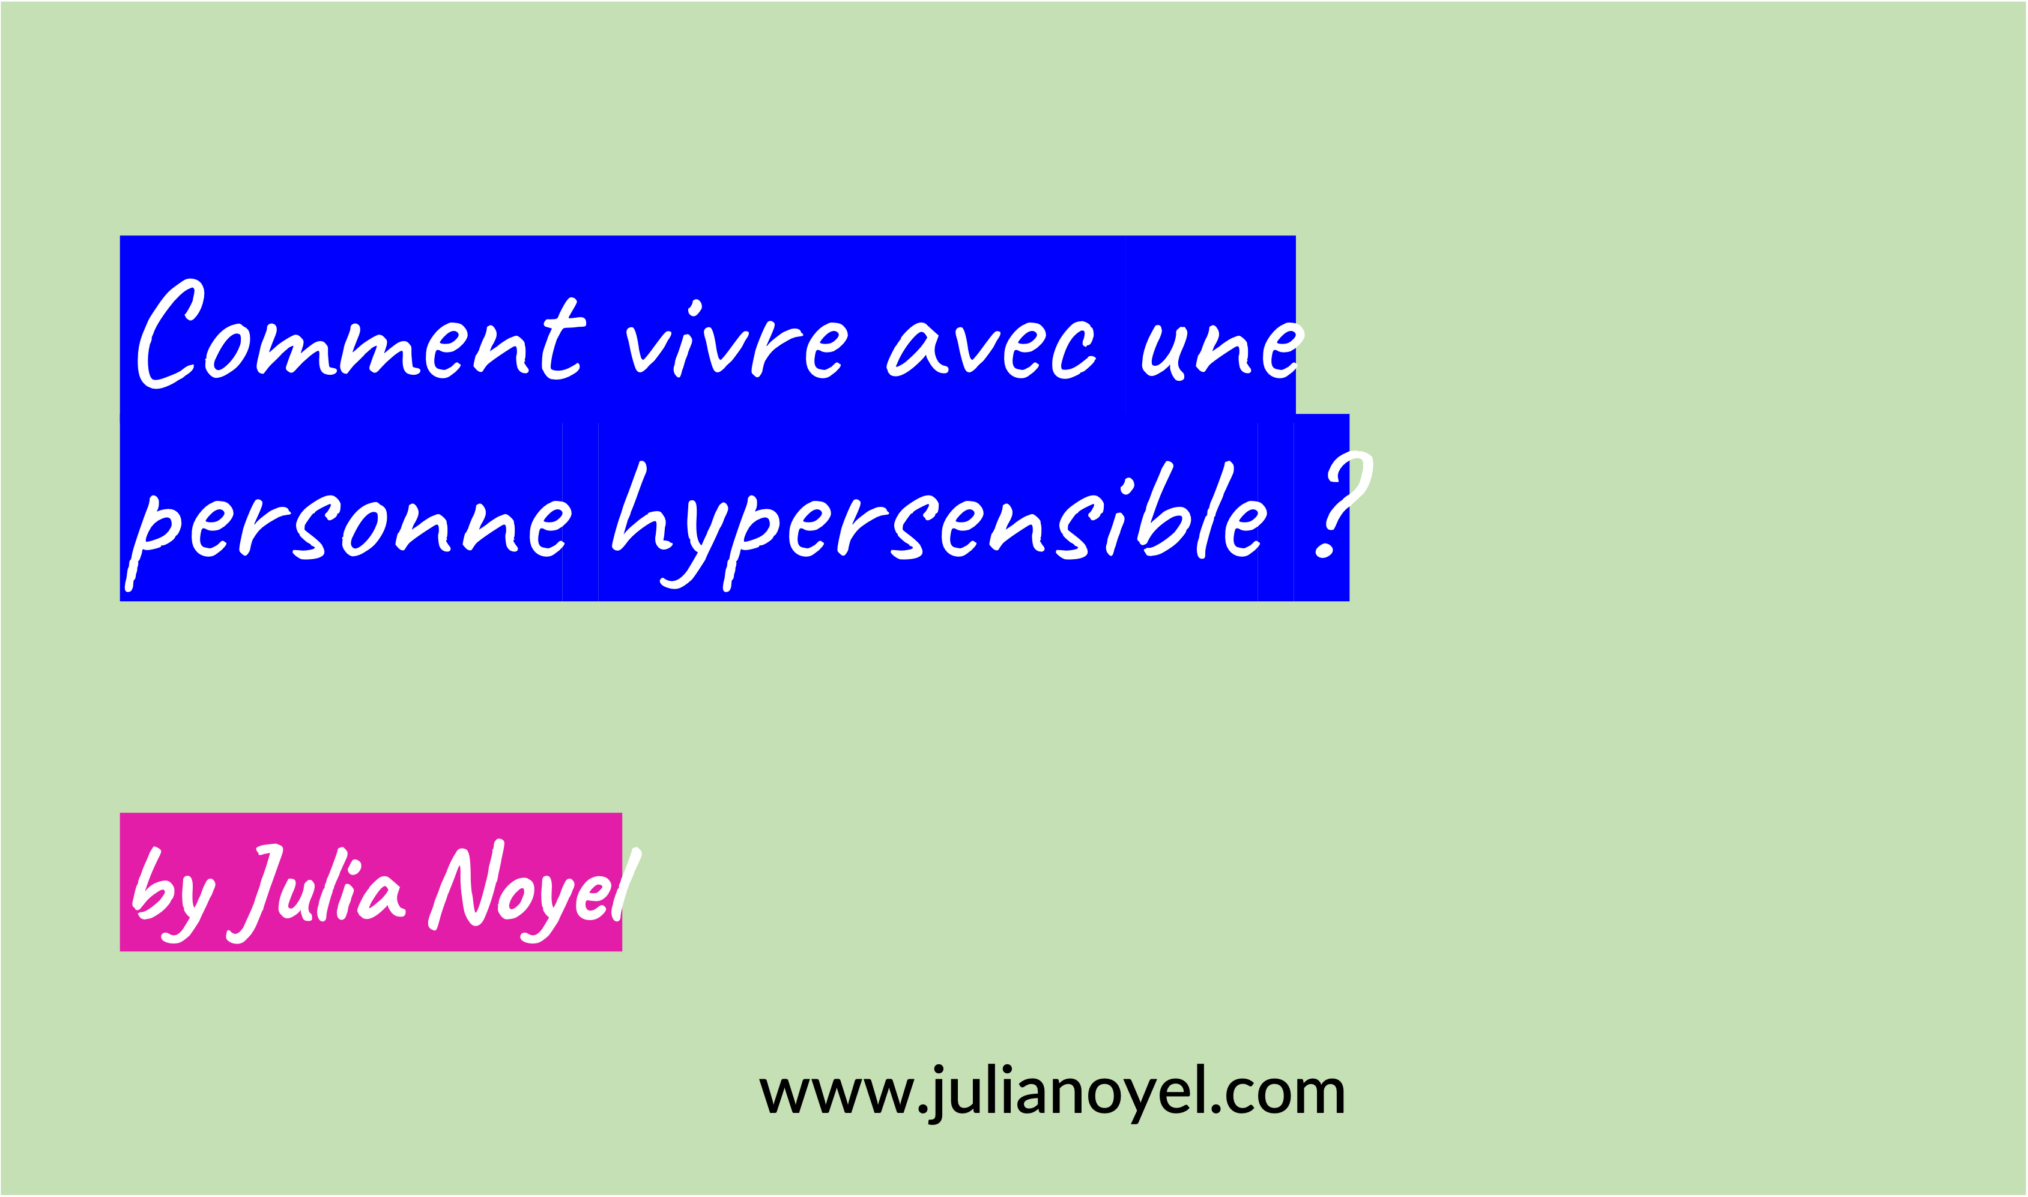 Comment vivre avec une personne hypersensible ? by Julia Noyel